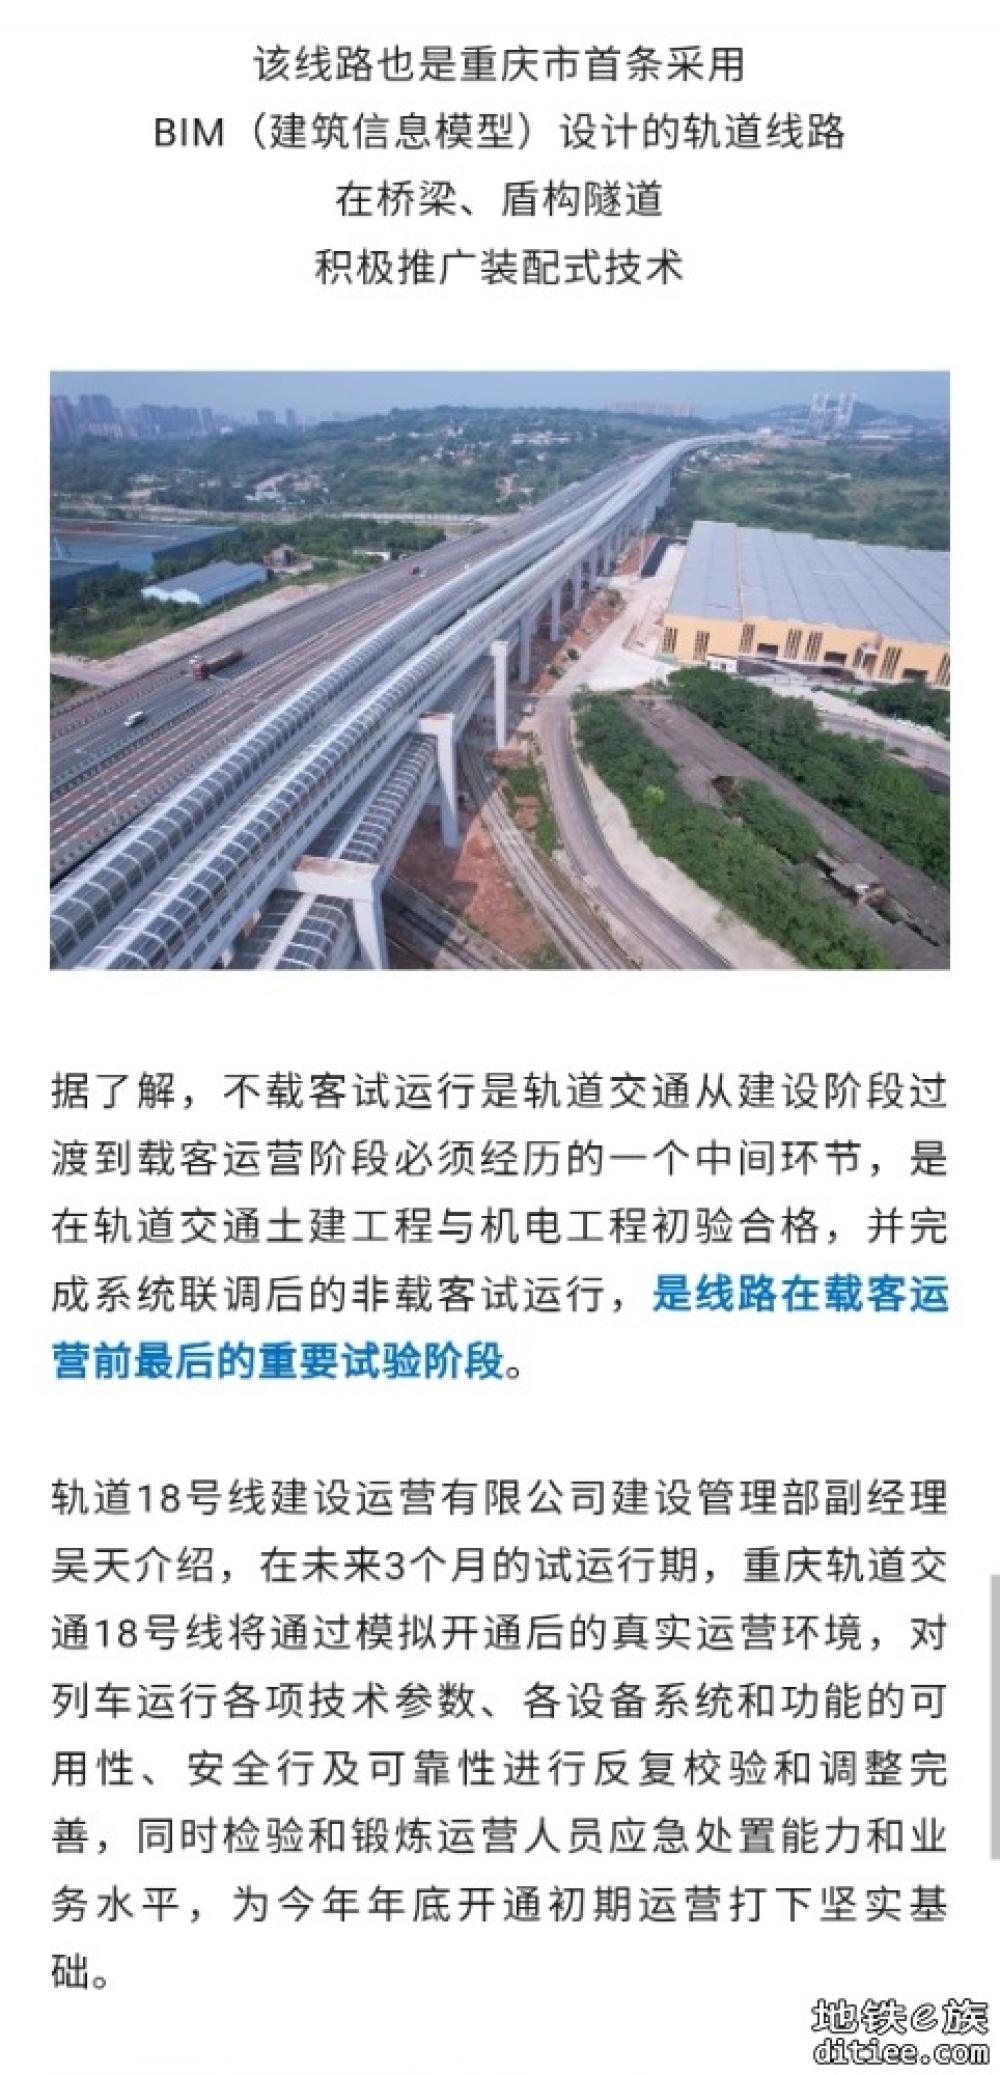 今年内，重庆前三期轨道线路全部建成通车